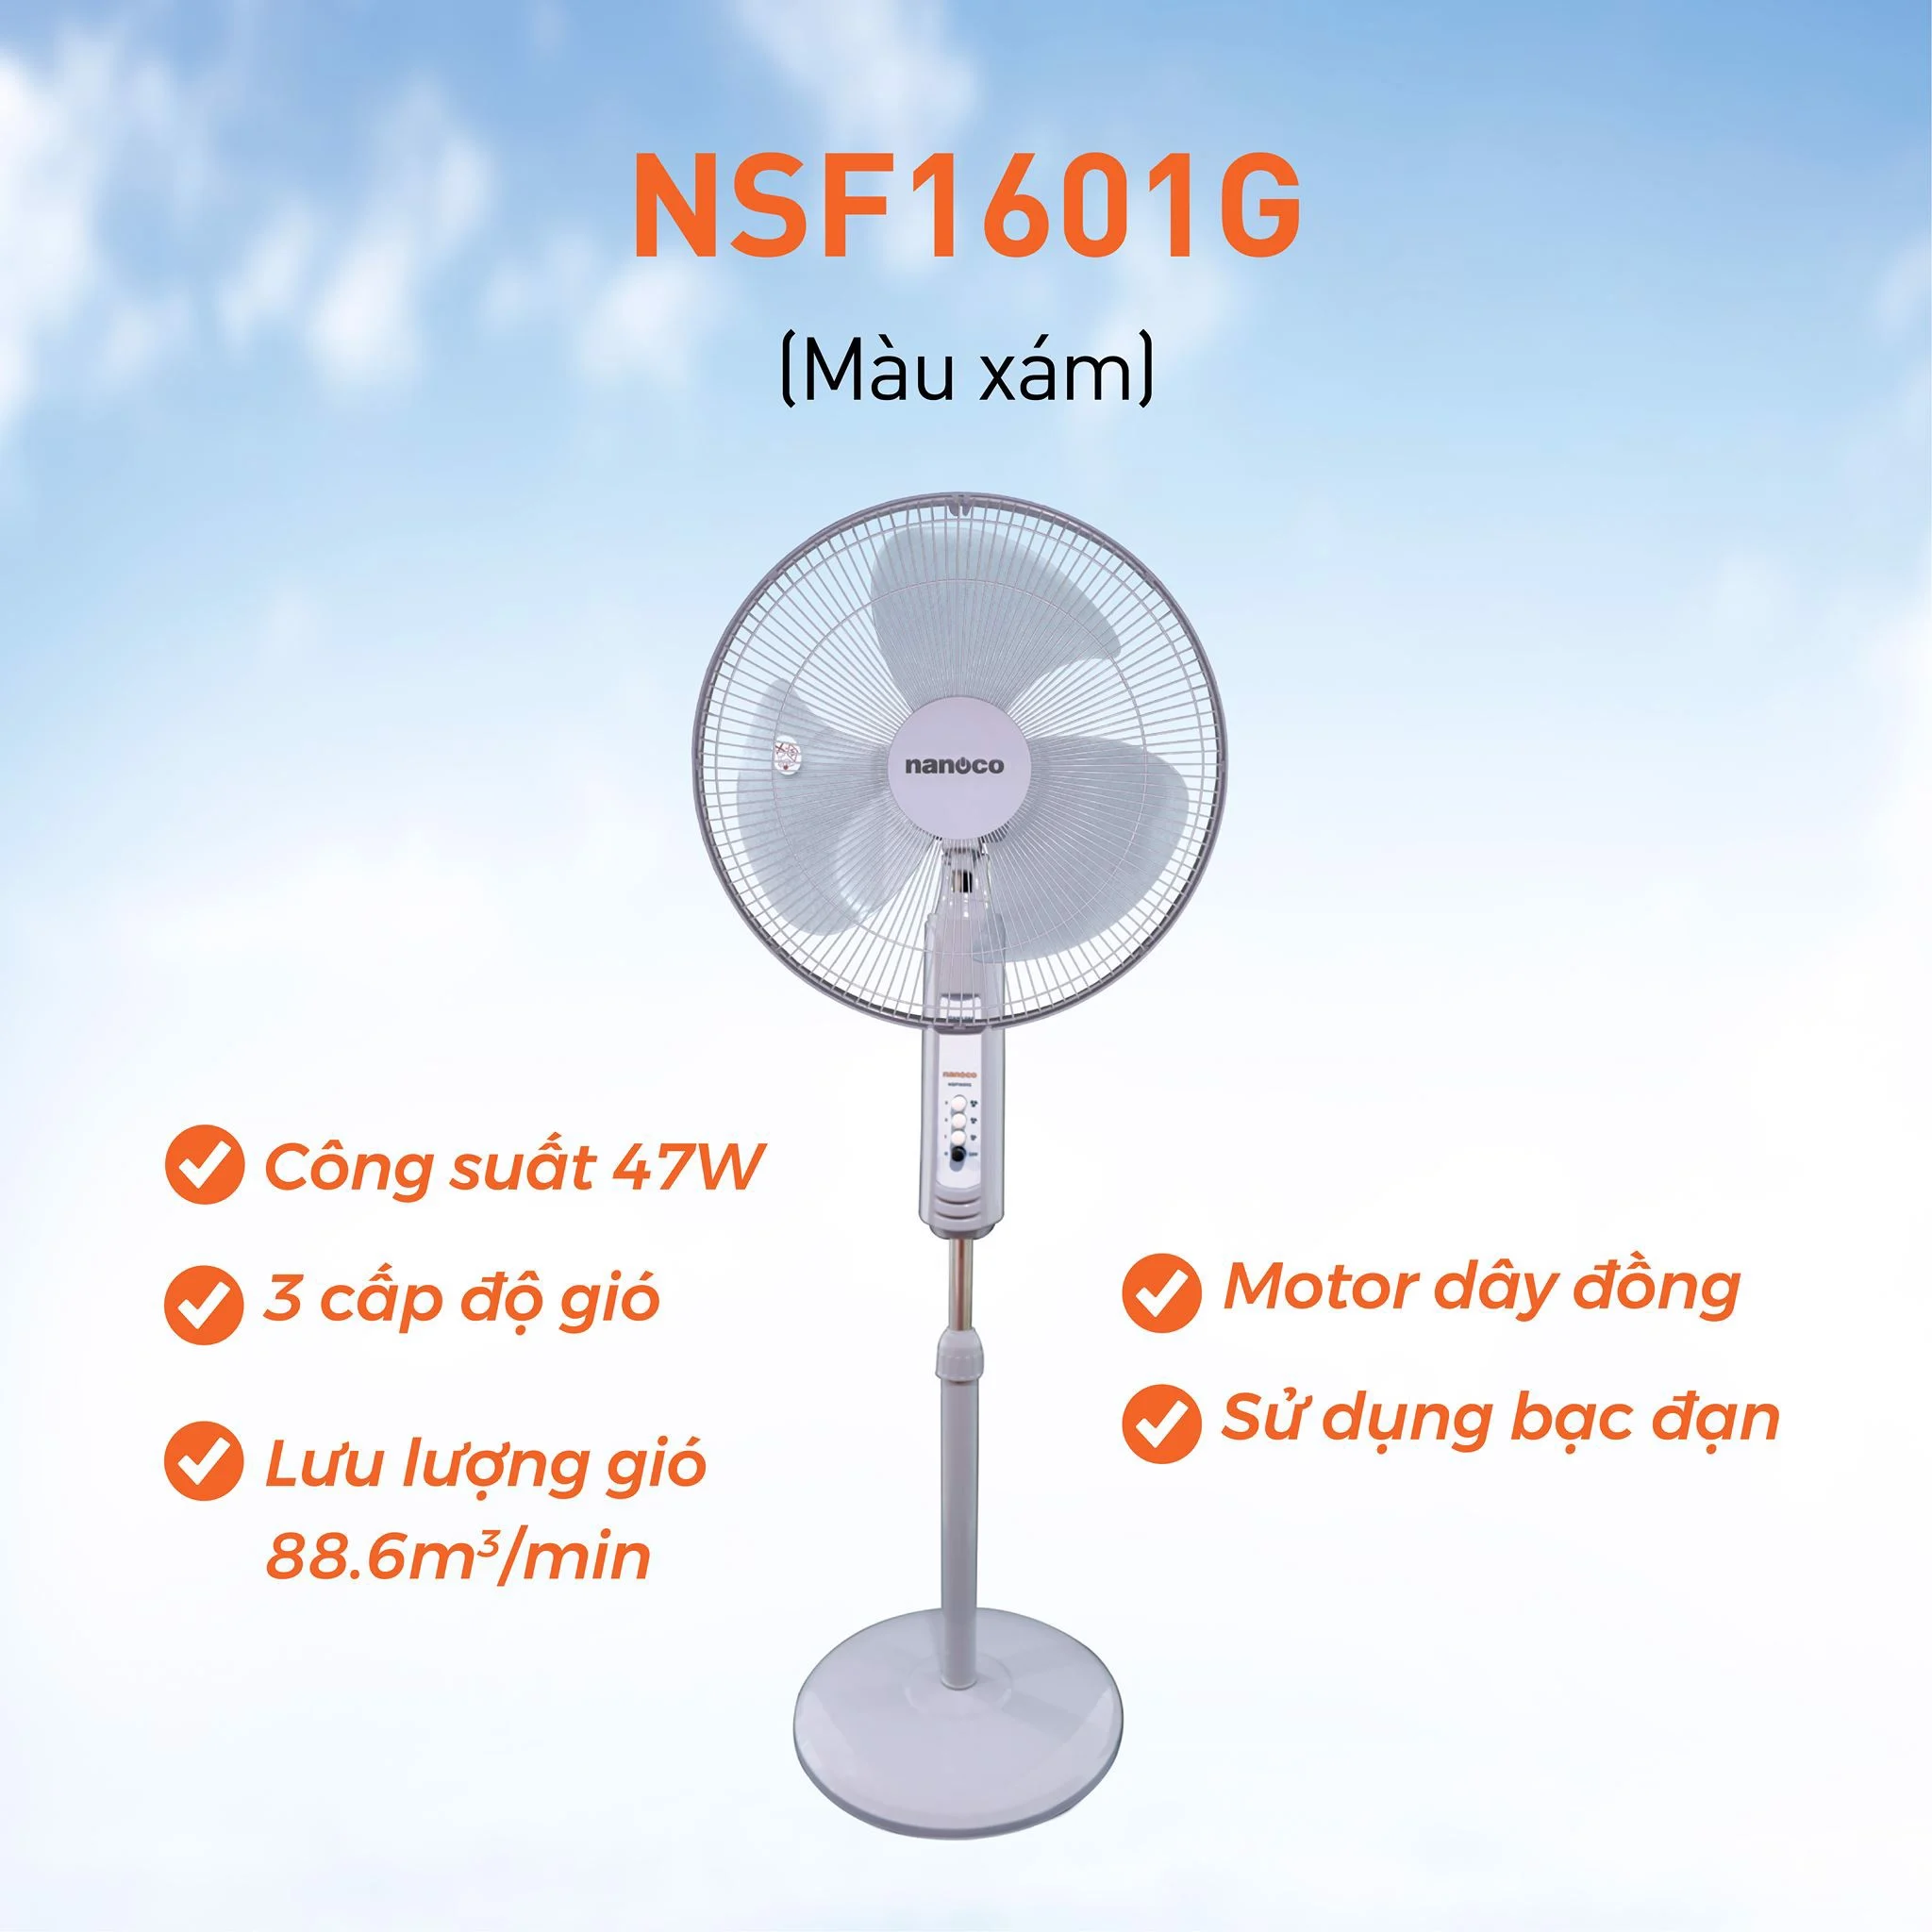 Quạt Đứng Nanoco NSF1601G (Màu xám)